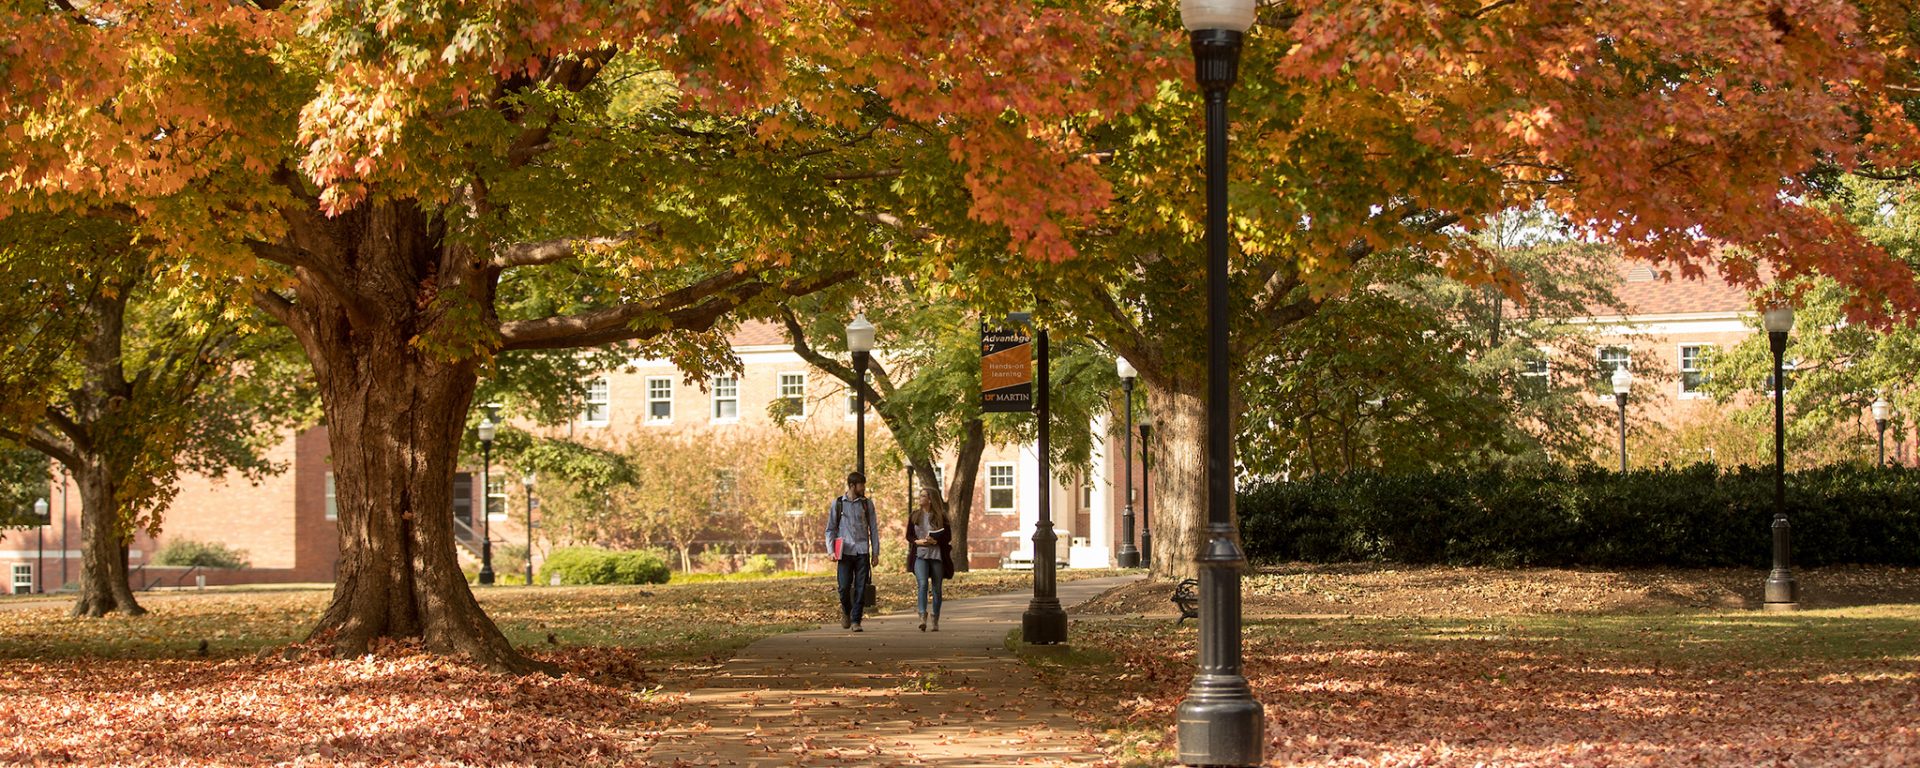 Campus quad in fall